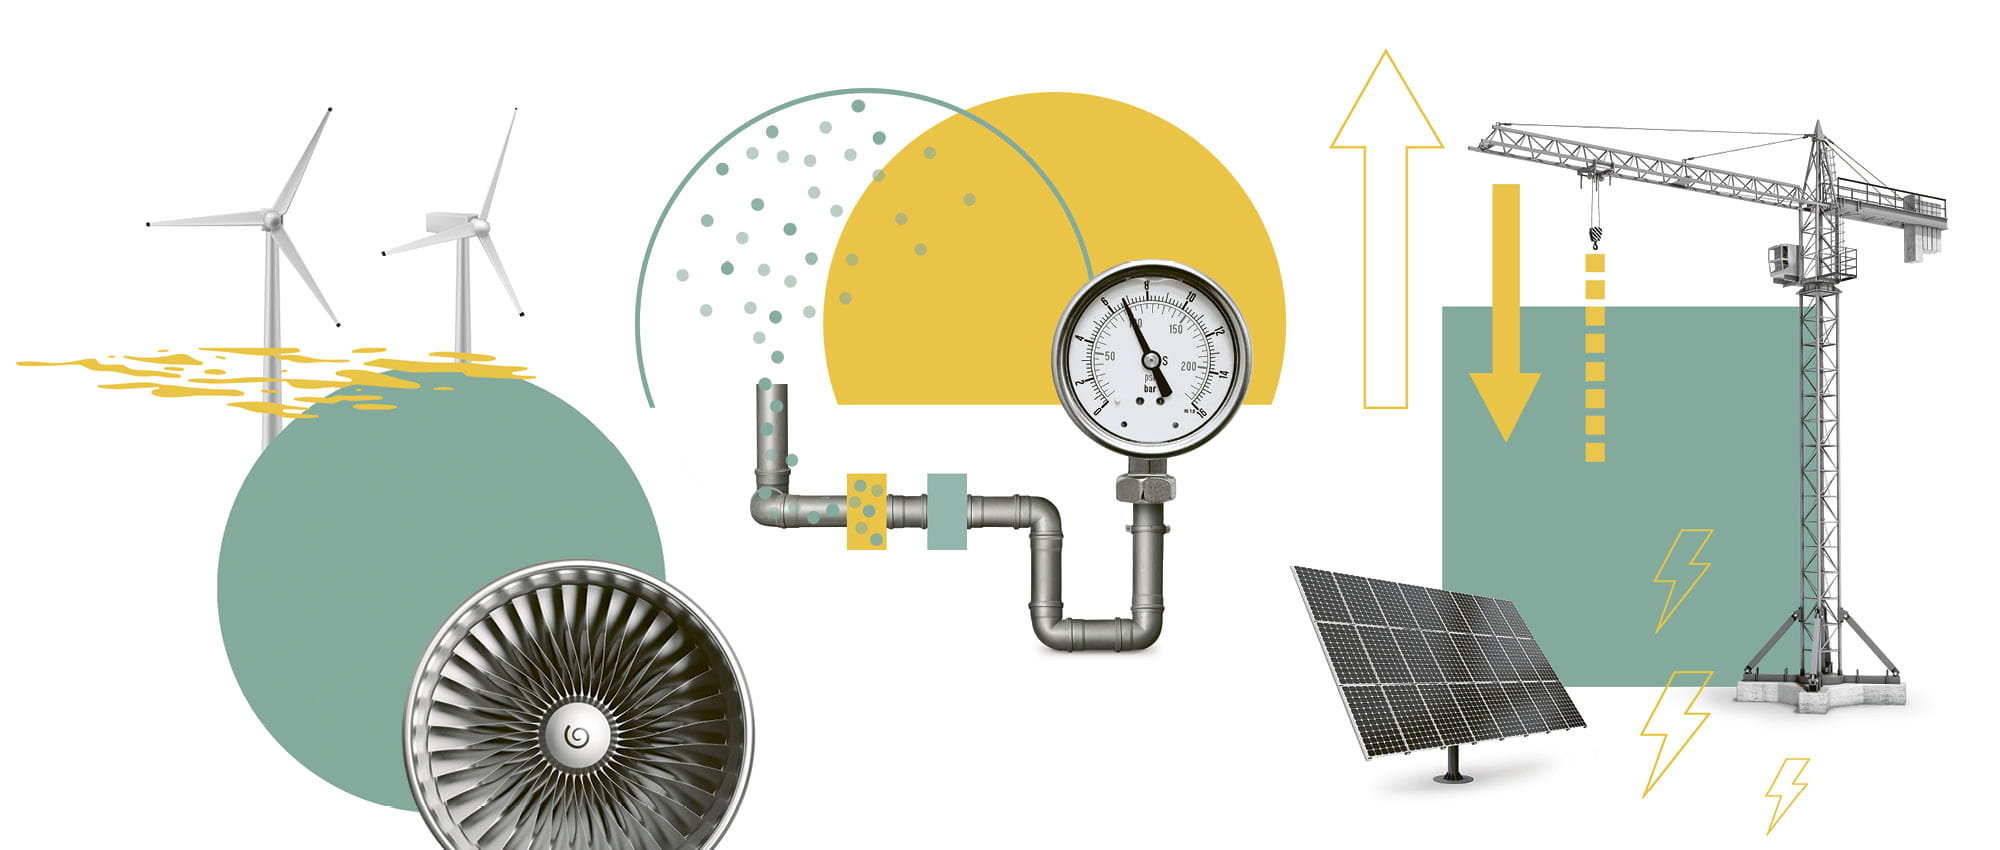 Illustrierte Collage mit einer Solaranlage, einem Kran, Windrädern und einem Ventilator.